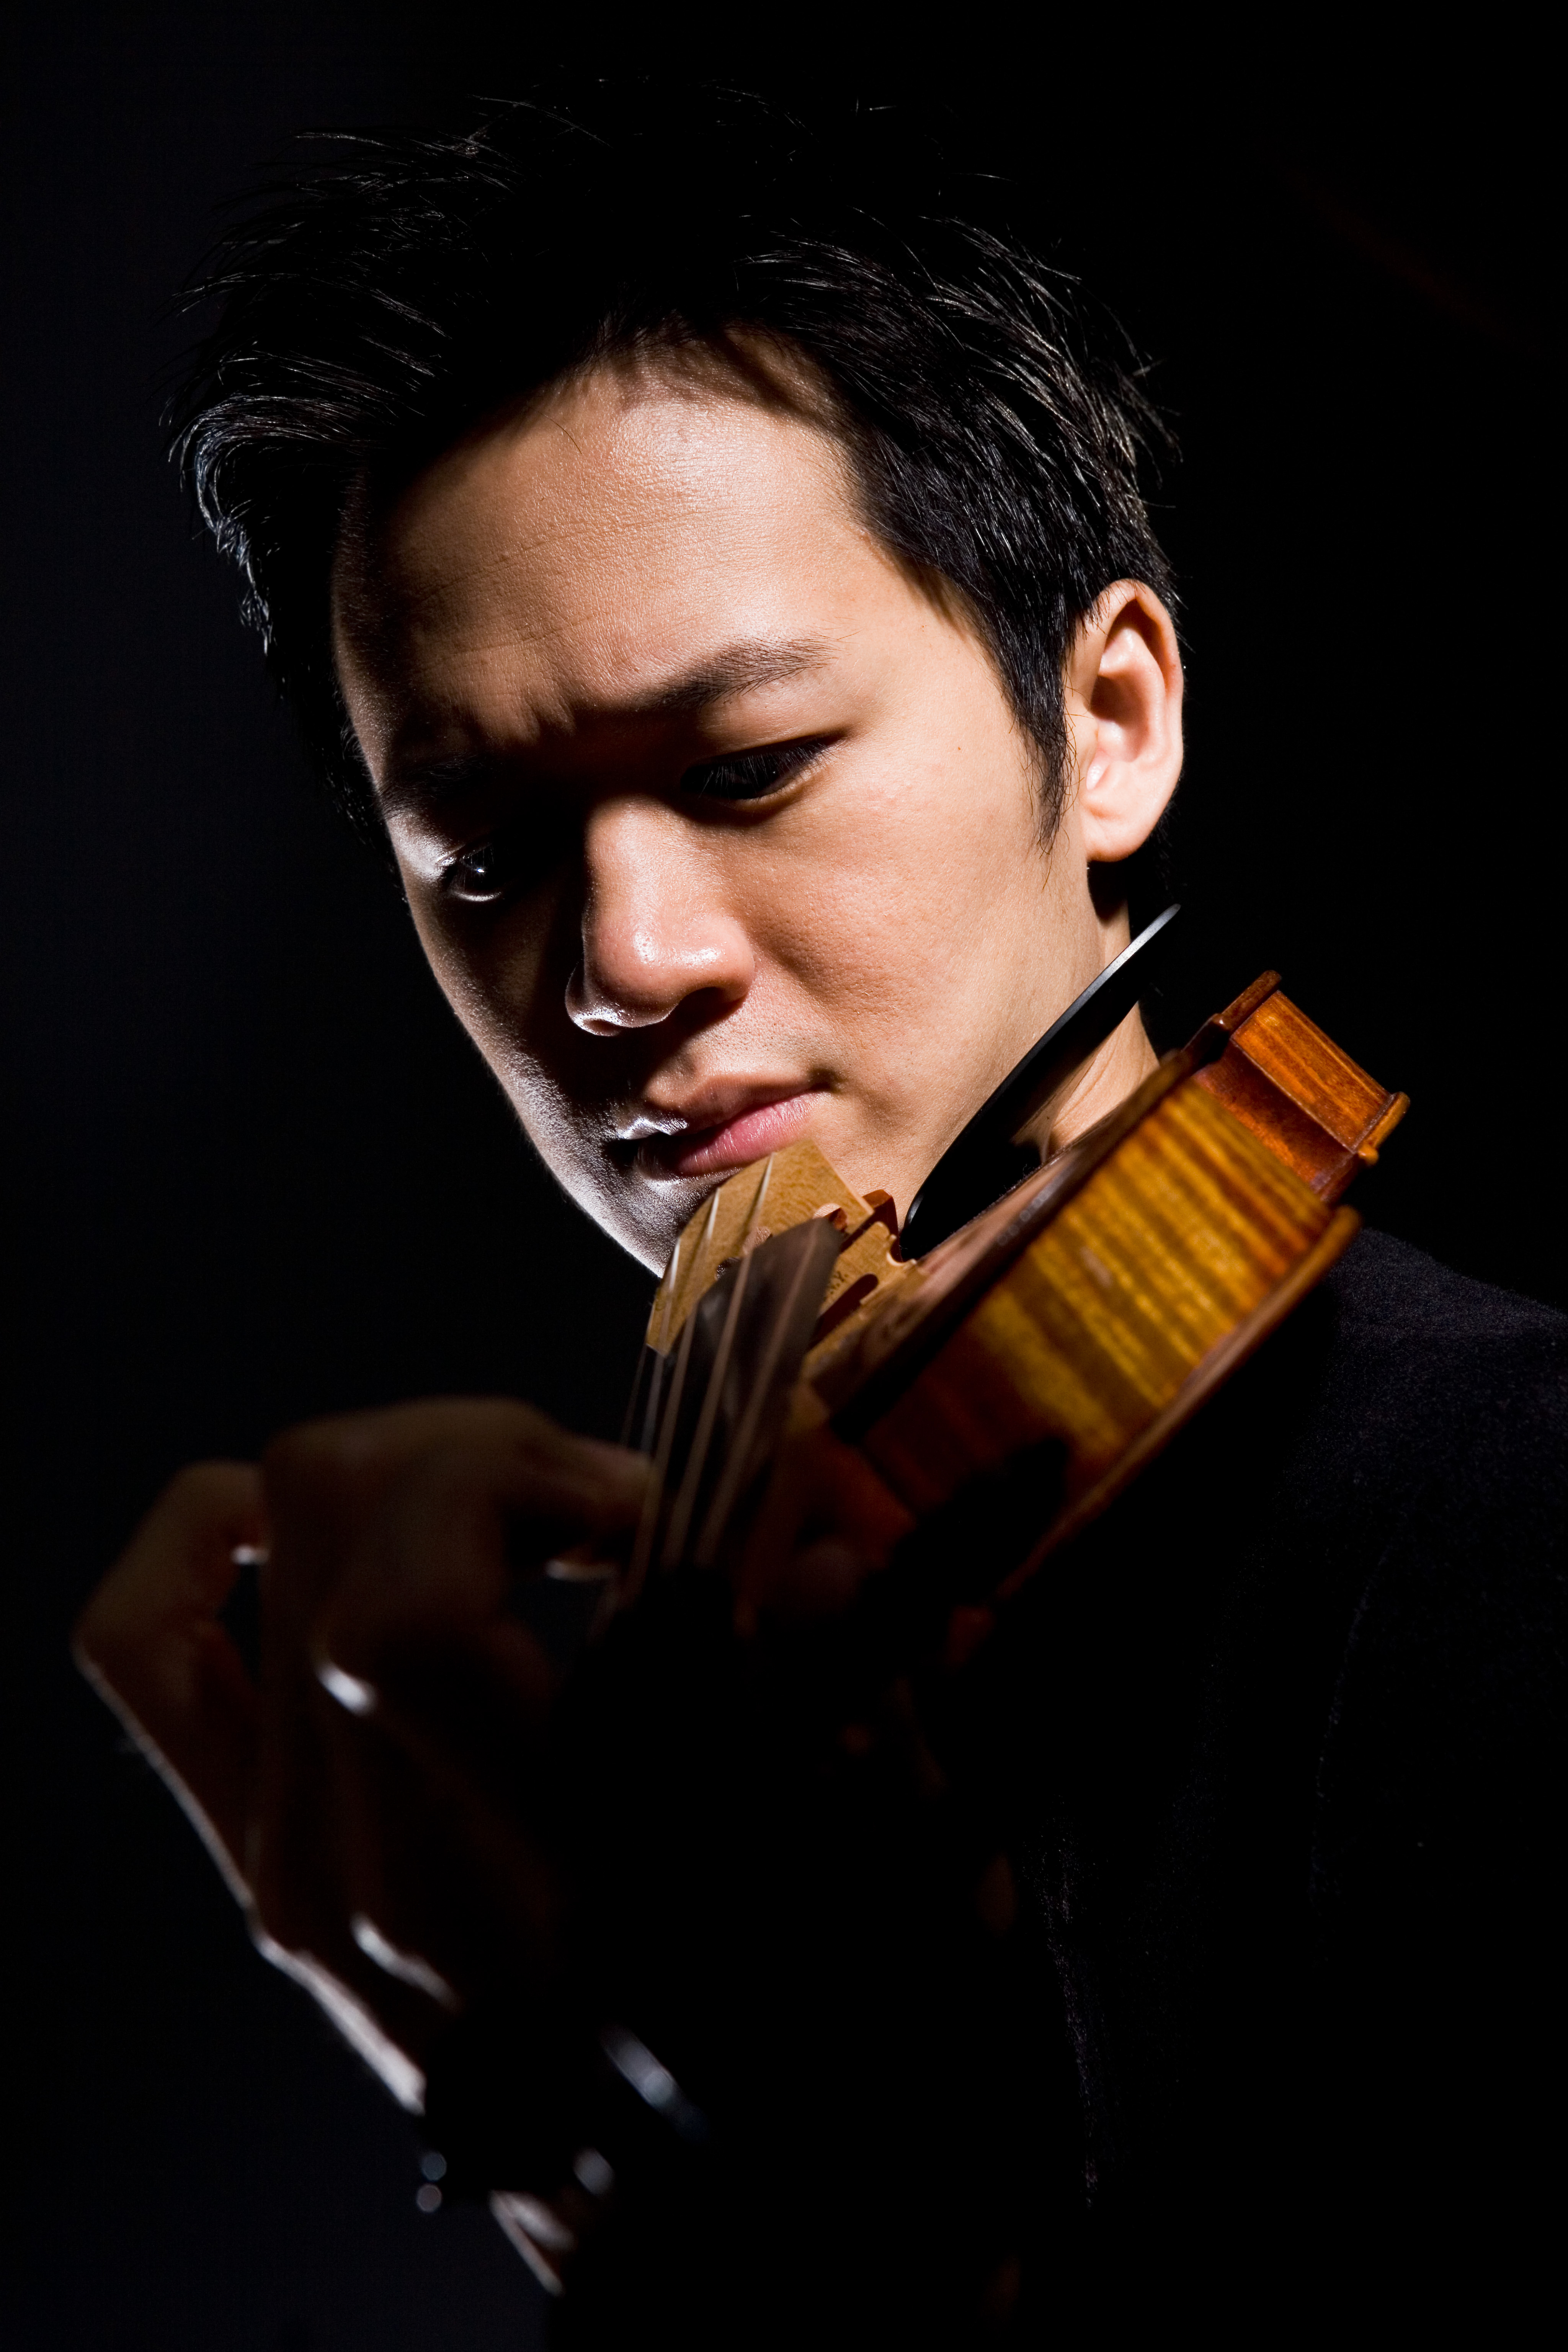 Lee Actor Violin Concerto HD Photos Gallery